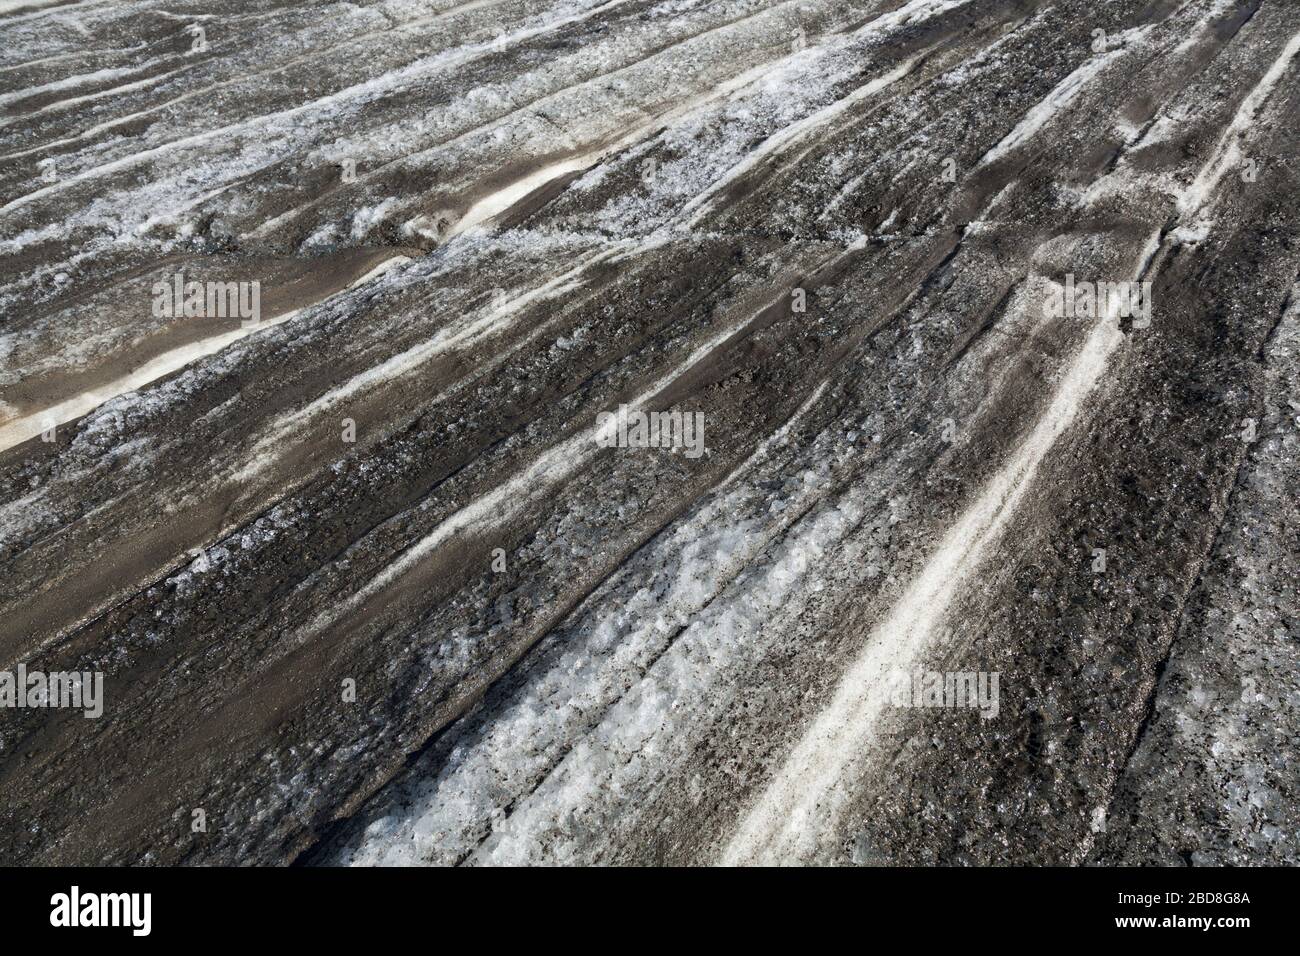 Jährliche Schneeansammlungen und Schmelzen auf dem Snowbird-Gletscher, den Talkeetna Mountains, Alaska. Stockfoto